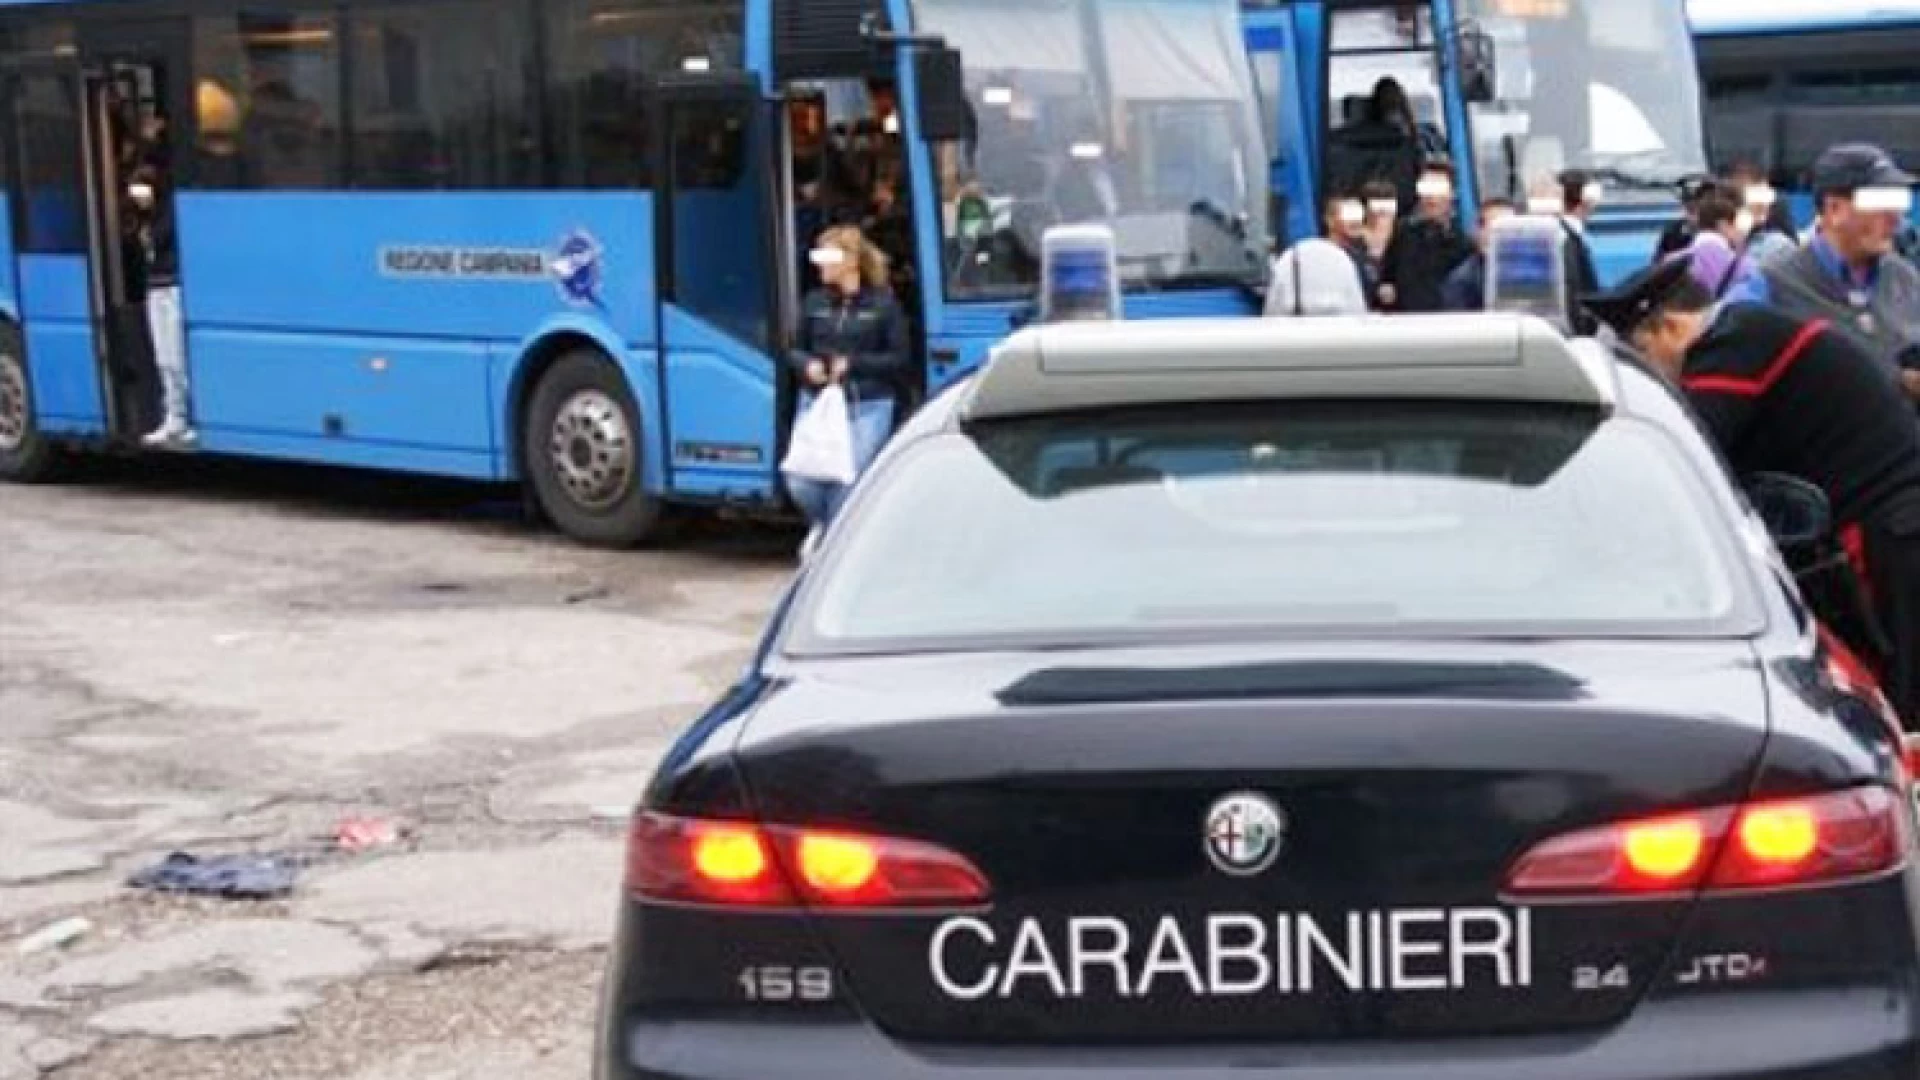 Isernia: Controlli antidroga dei Carabinieri presso Istituti Scolastici, Stazione Ferroviaria e Terminal Bus. tre giovani trovati in possesso di droga.